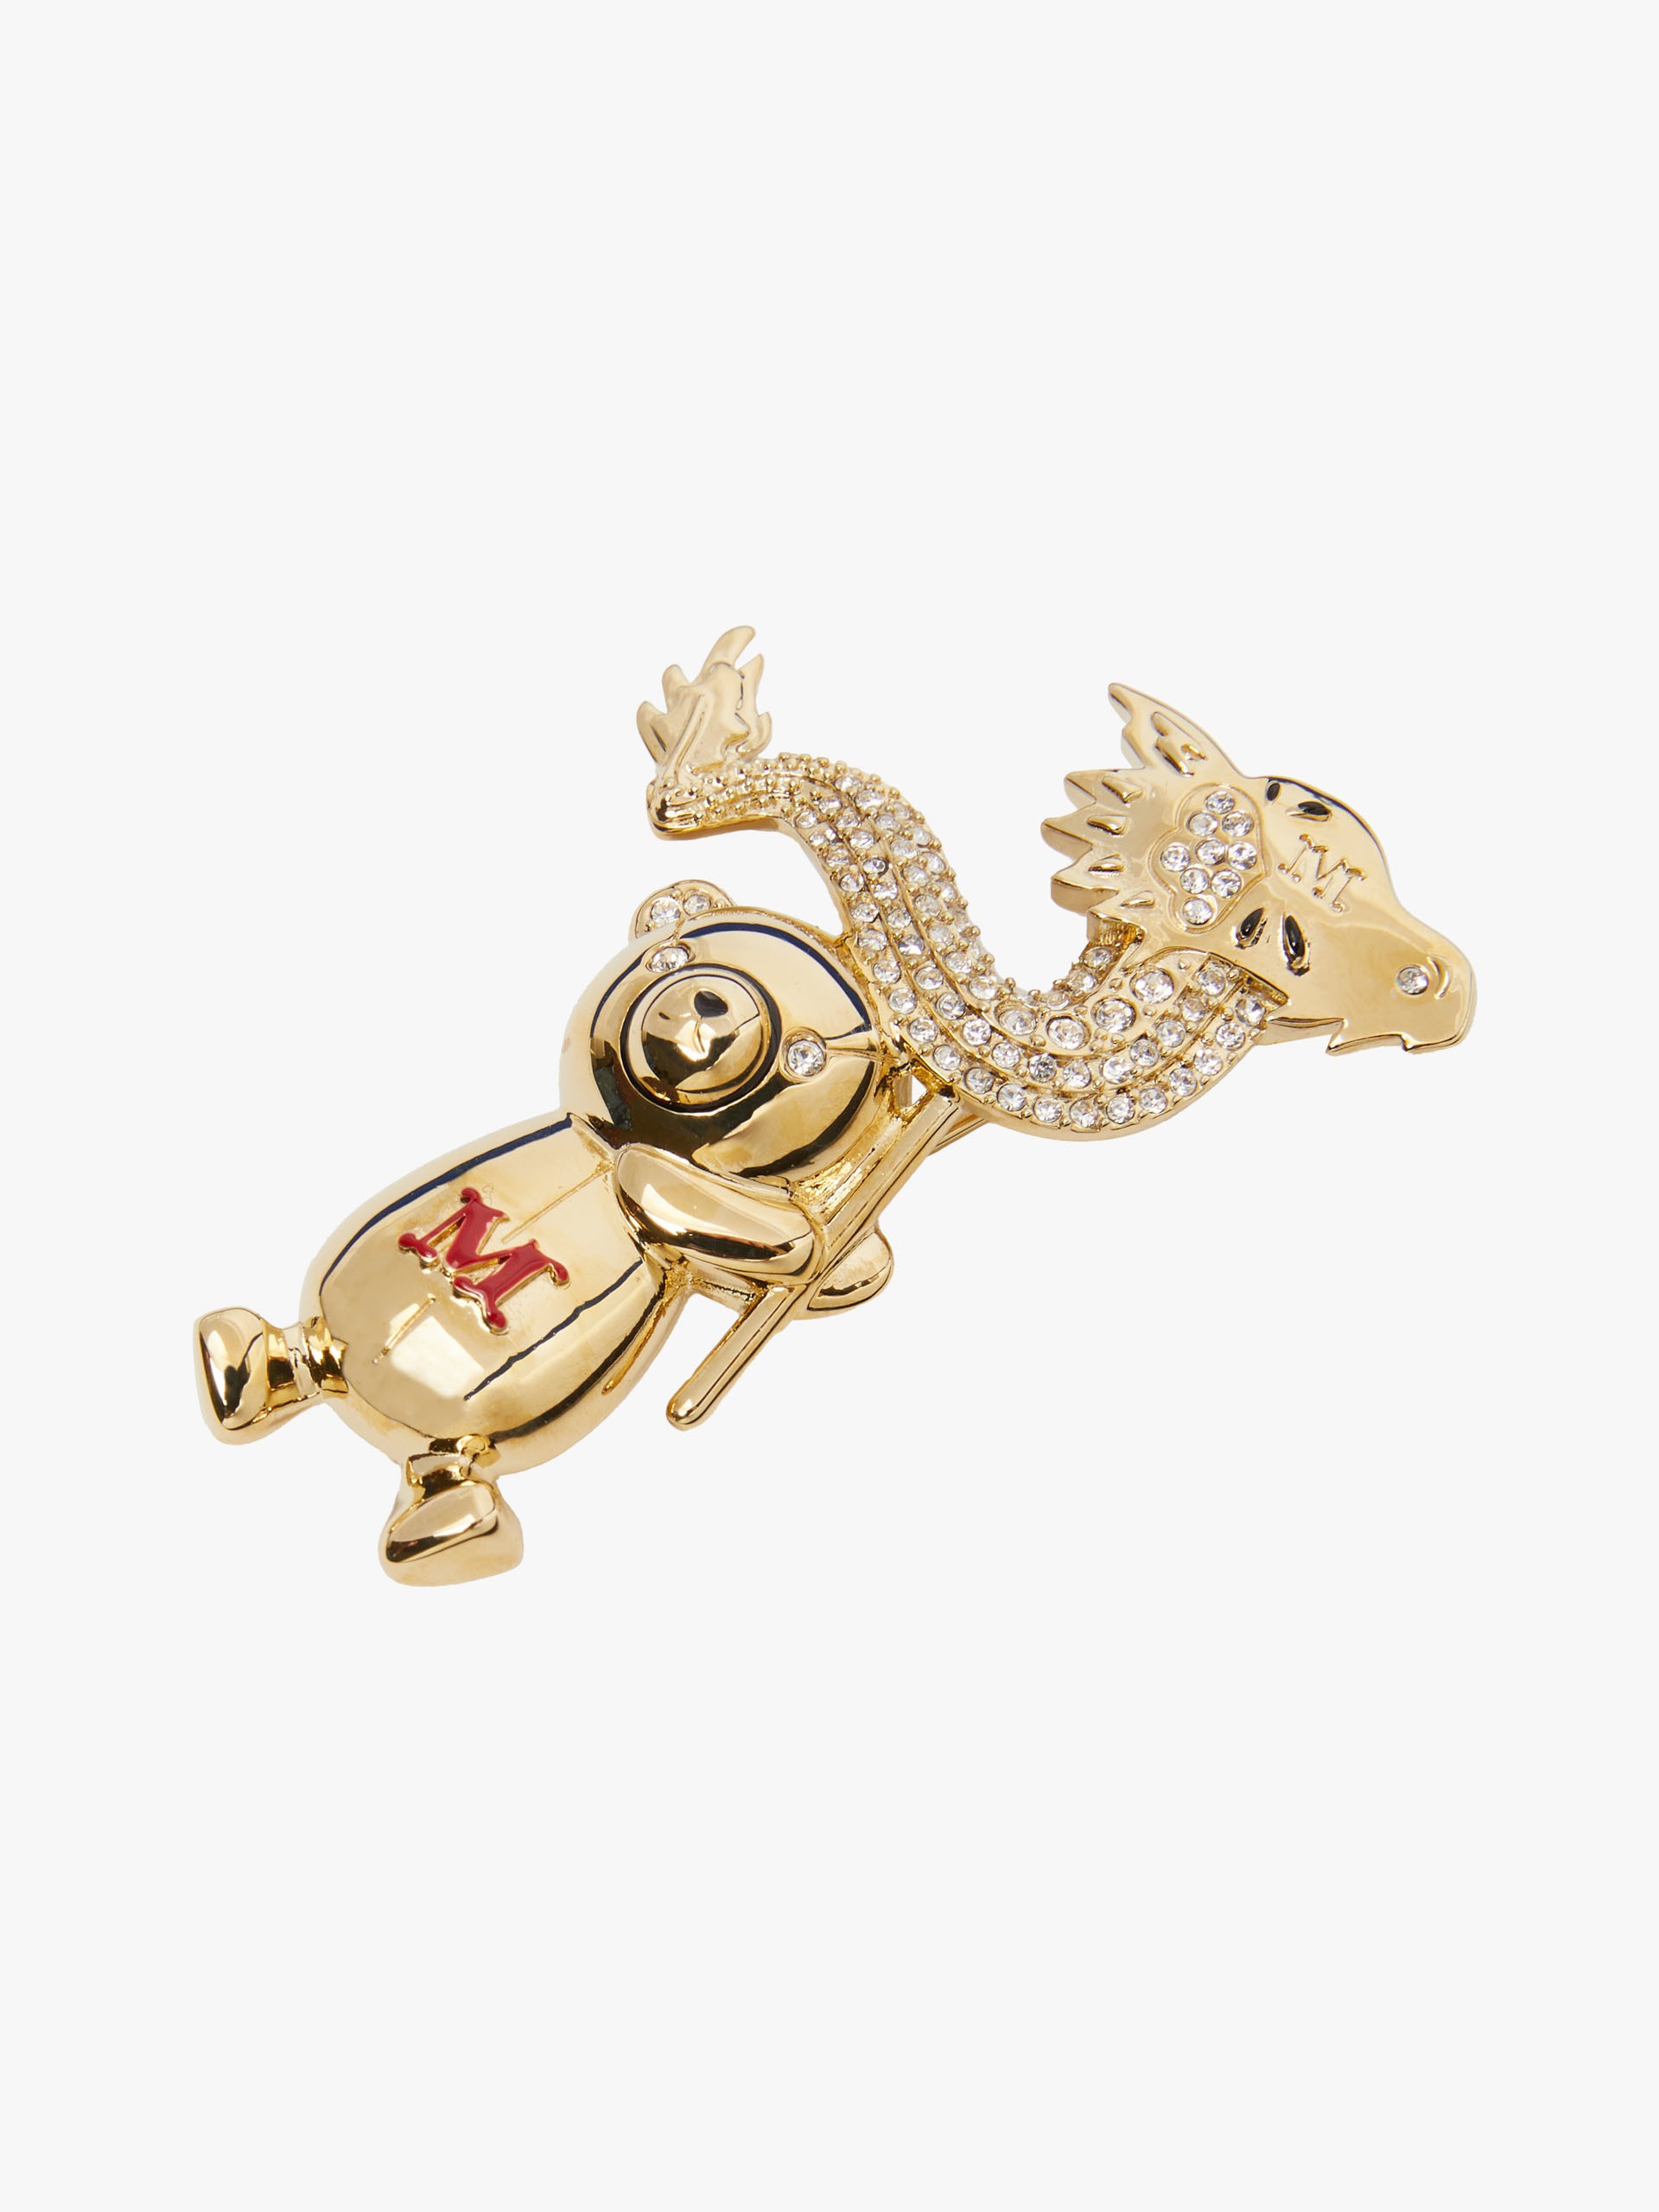 Metal teddy bear brooch with dragon - 3